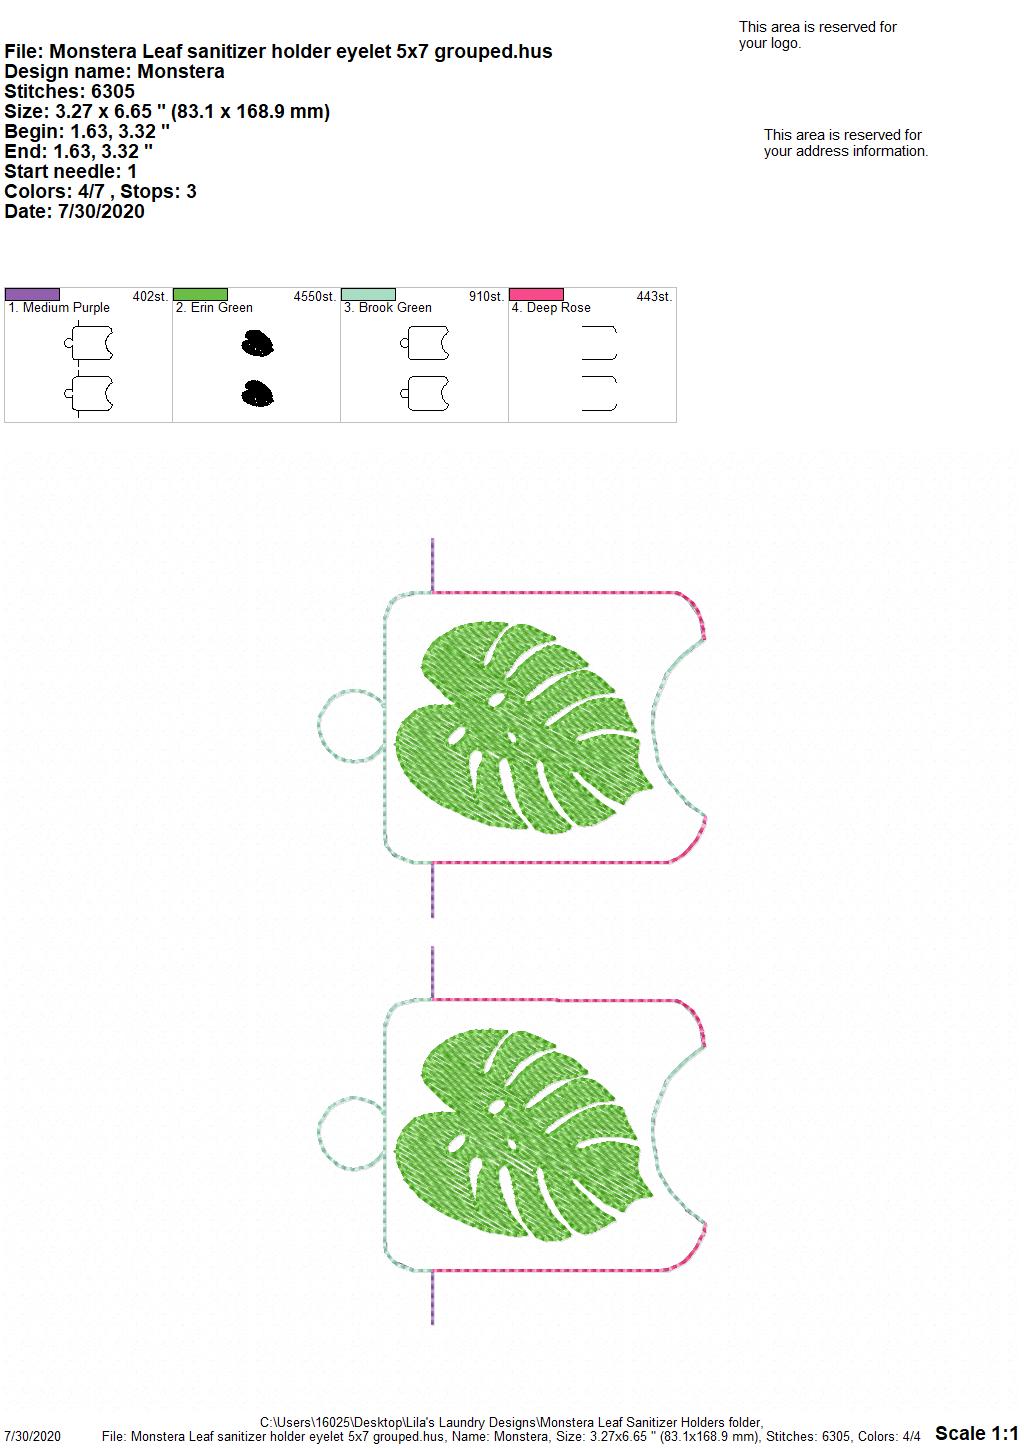 Monstera Leaf Sanitizer Holders - DIGITAL Embroidery DESIGN